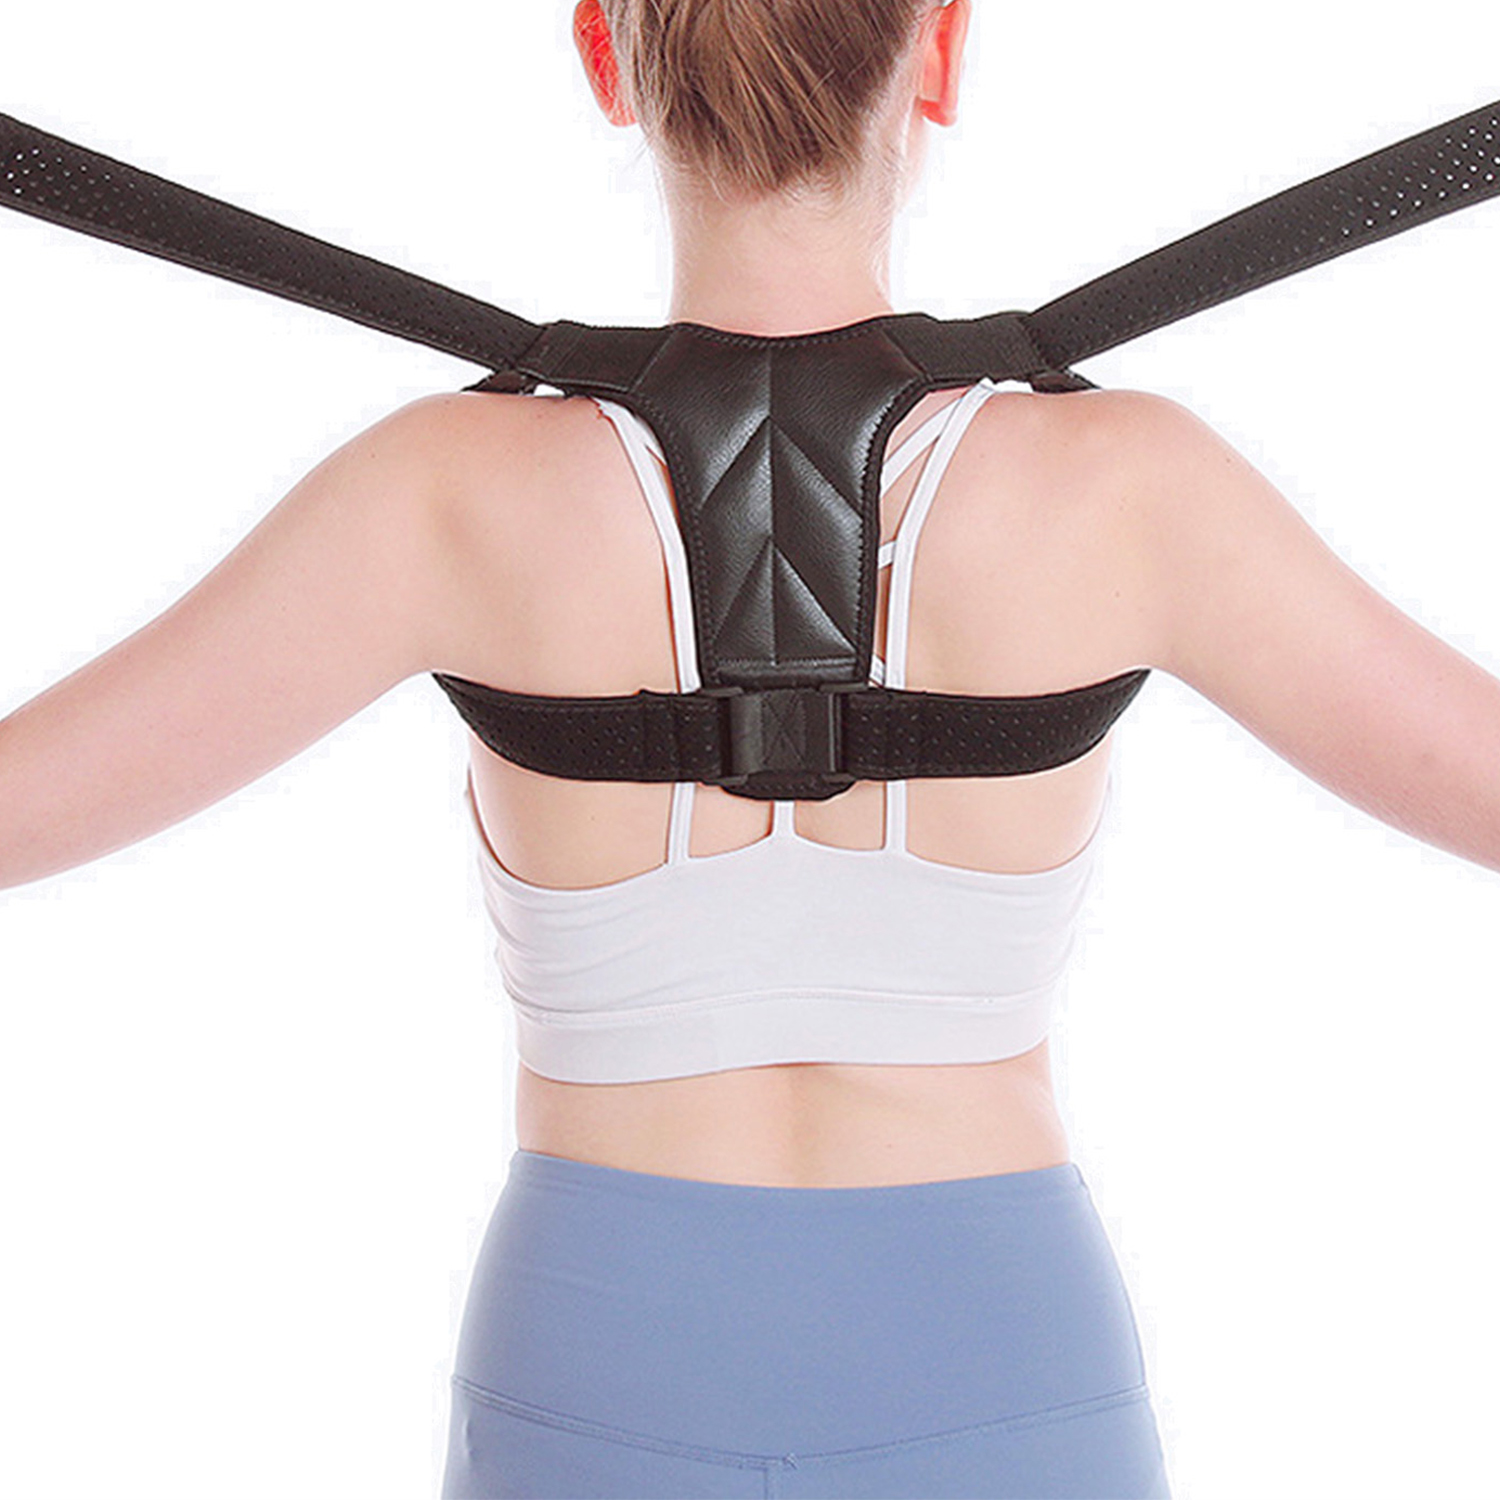 Corrector de postura de espalda, soporte ajustable para hombros, soporte para clavícula superior